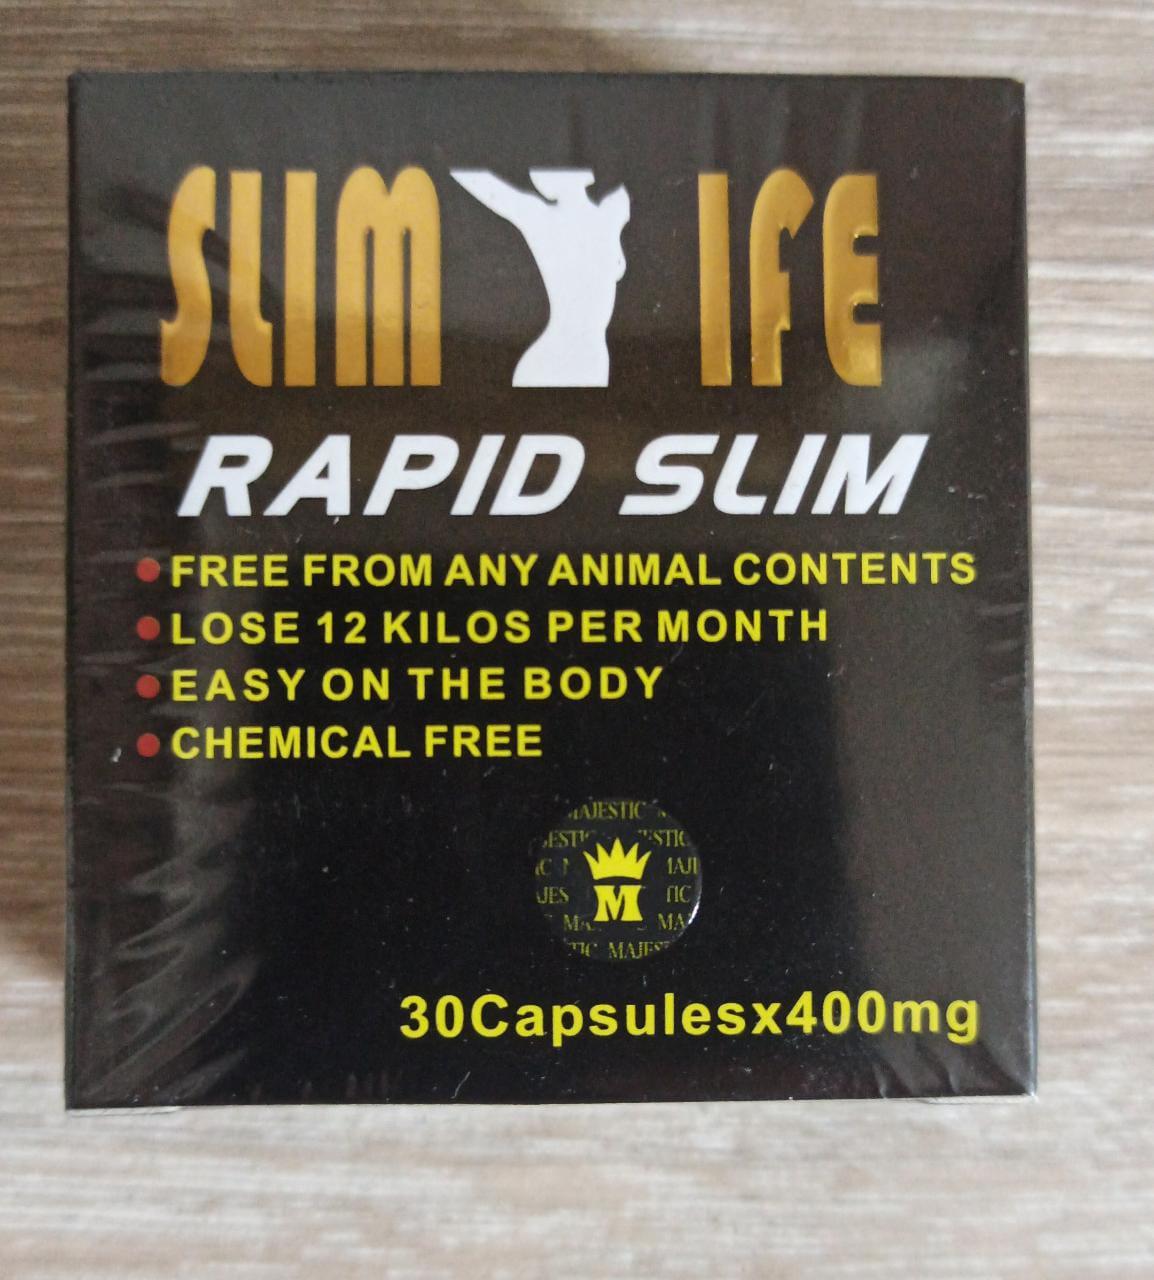 Slim life rapid slim